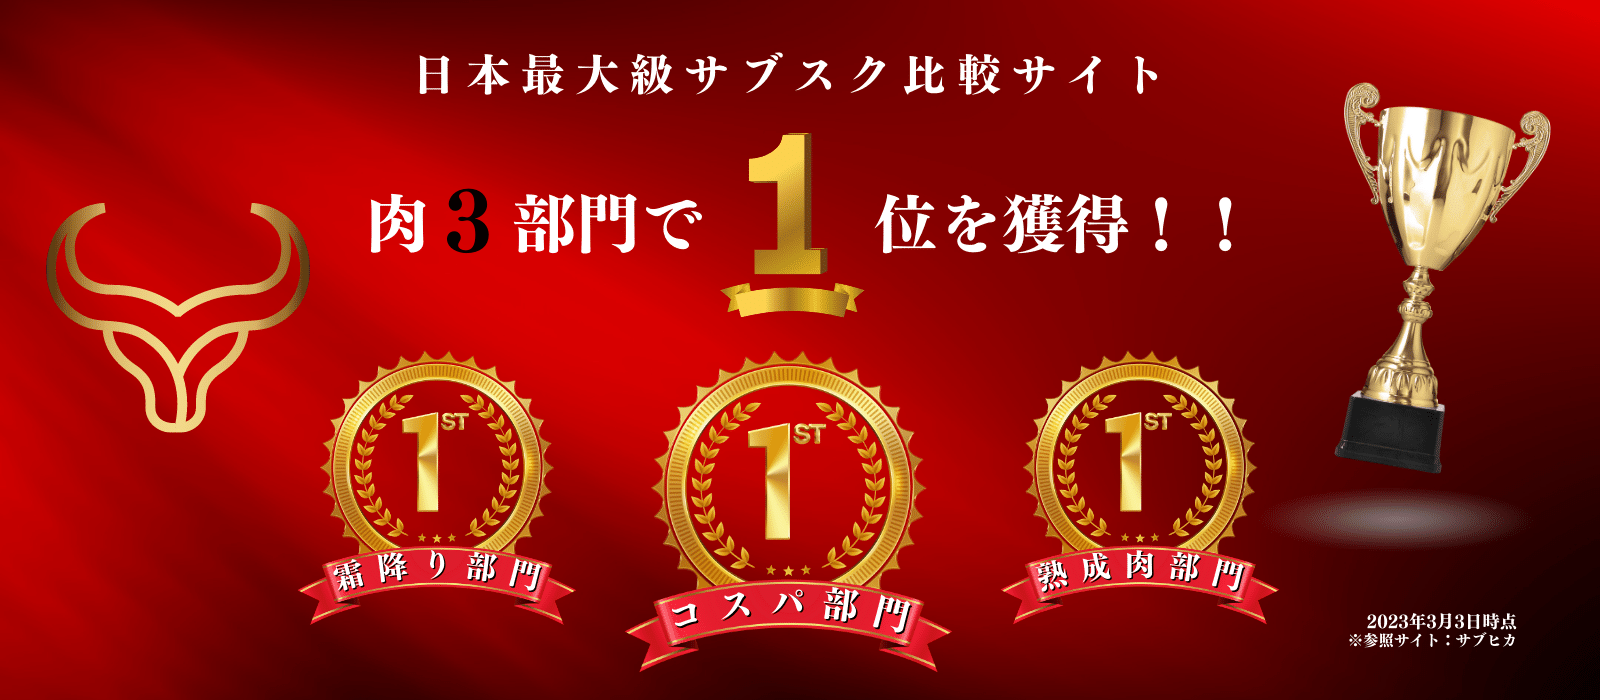 和牛サブスクリプション 日本最大級サブスク比較サイト サブヒカ 肉3部門 1位を獲得 コスパ部門 霜降り部門 熟成肉部門